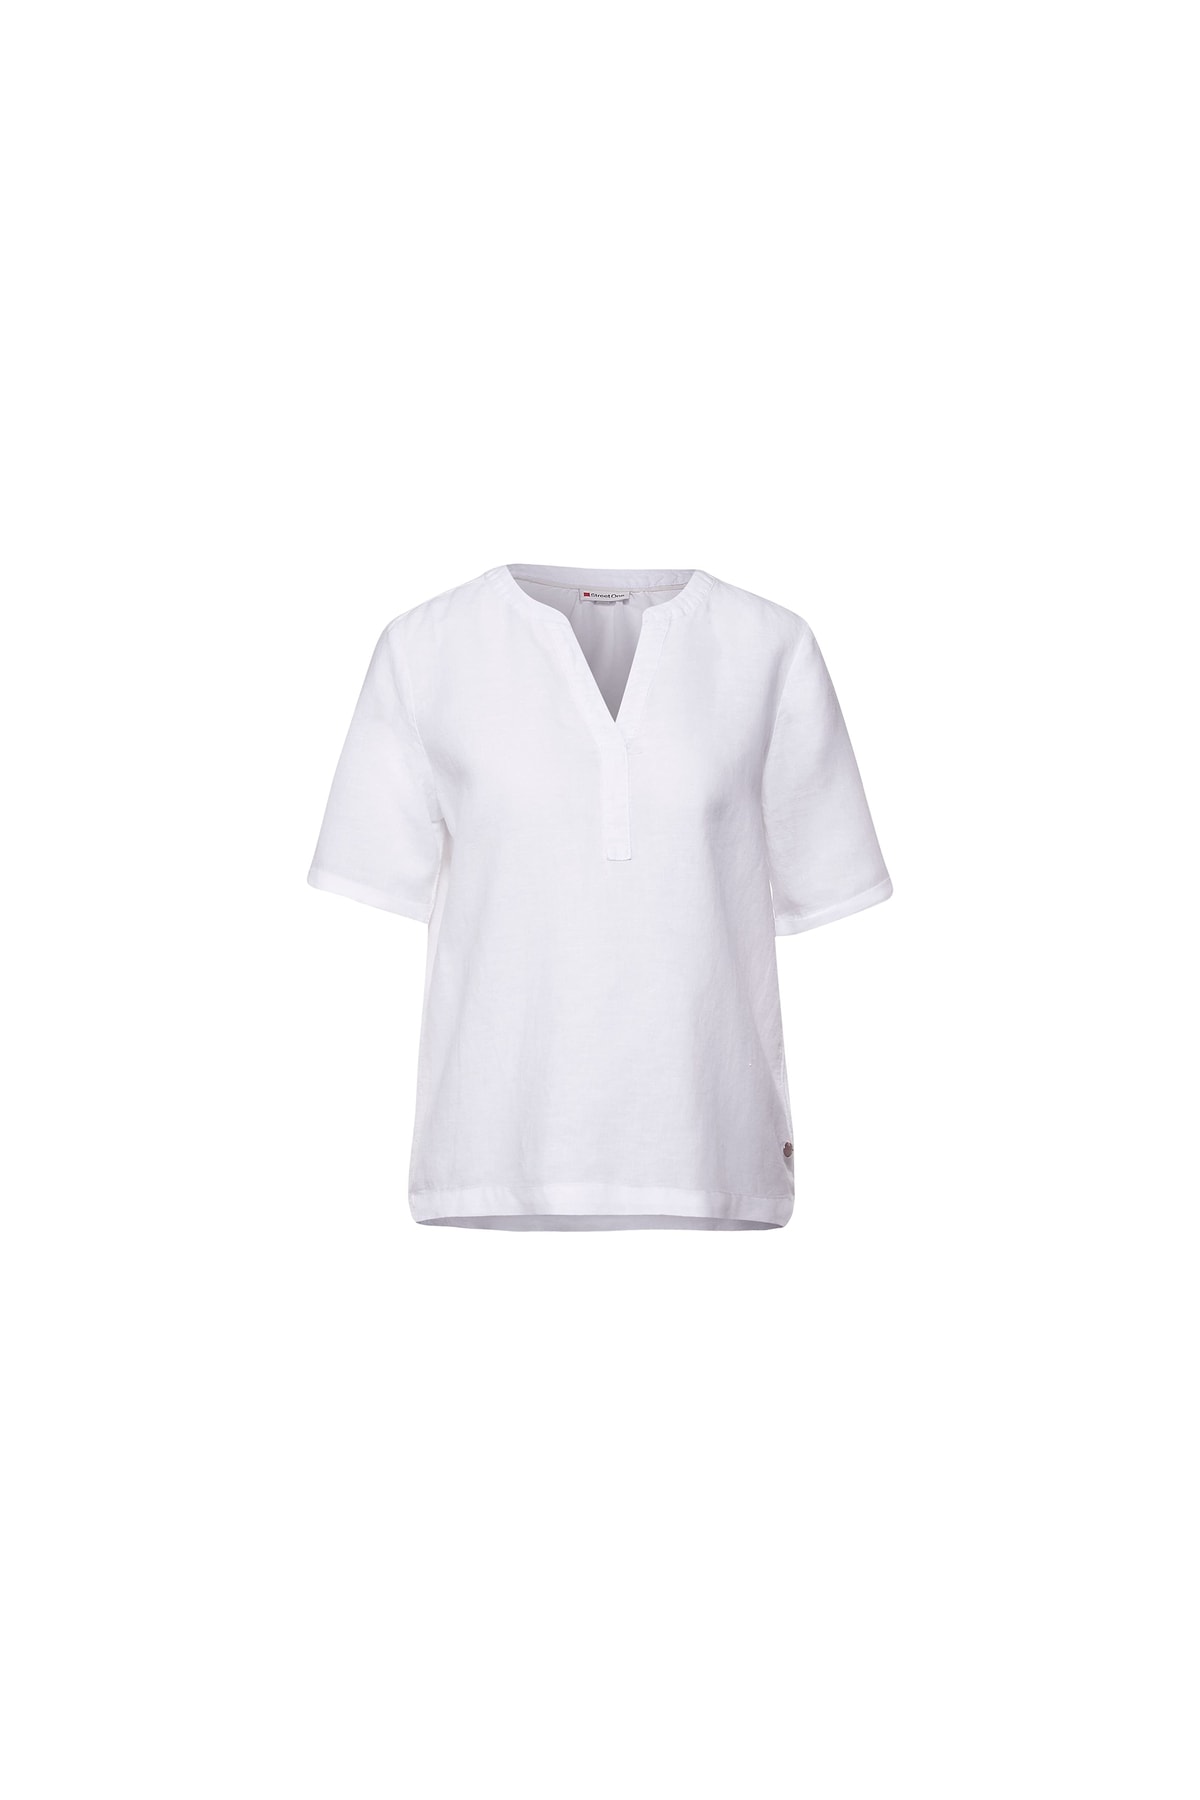 Street One Bluse Weiß Regular Fit Fast ausverkauft